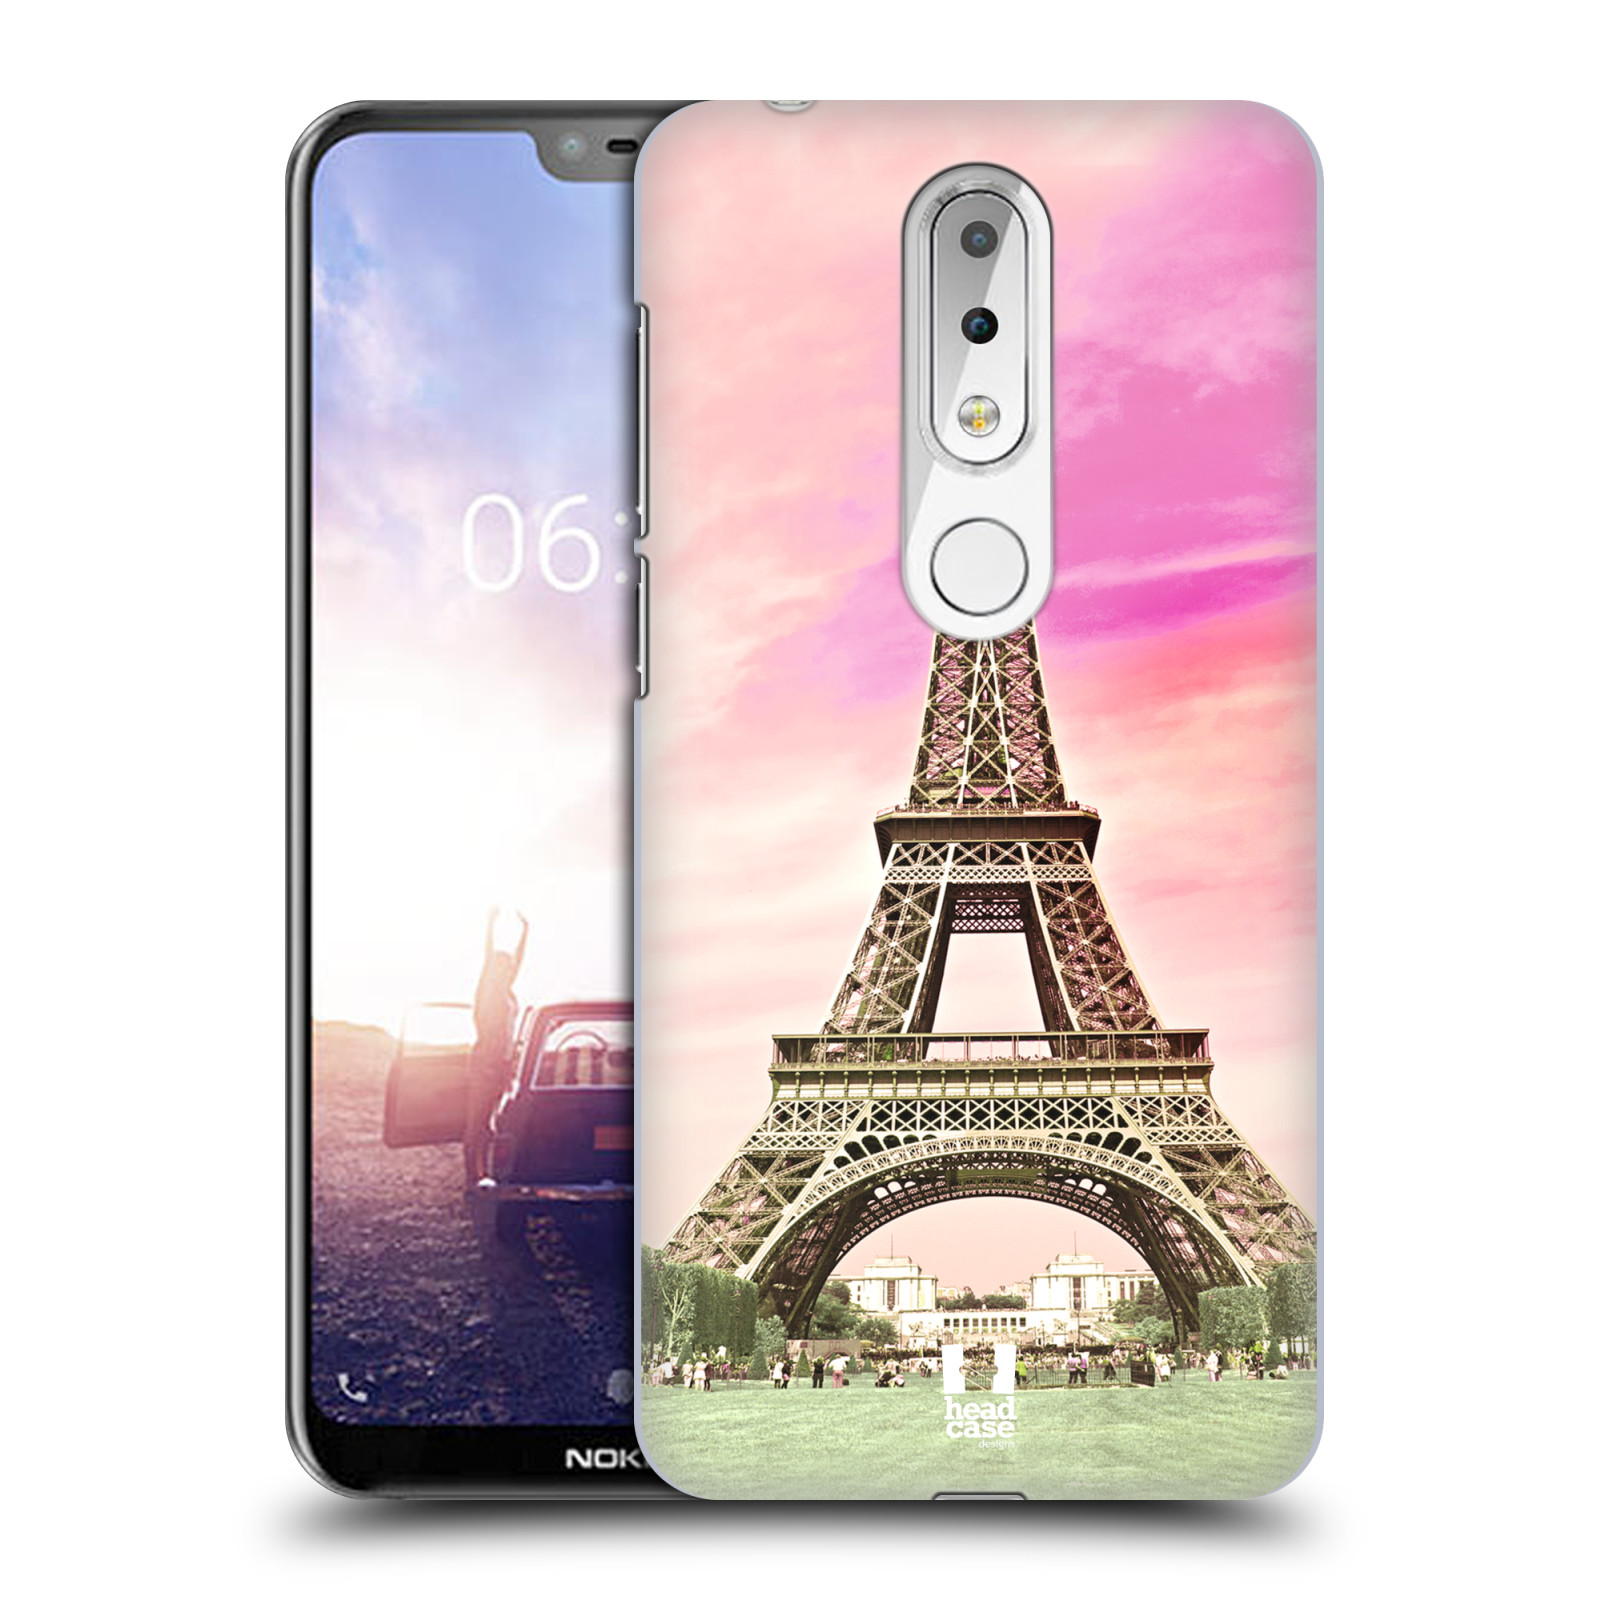 Pouzdro na mobil Nokia 6.1 Plus - HEAD CASE - historická místa Eiffelova věž Paříž